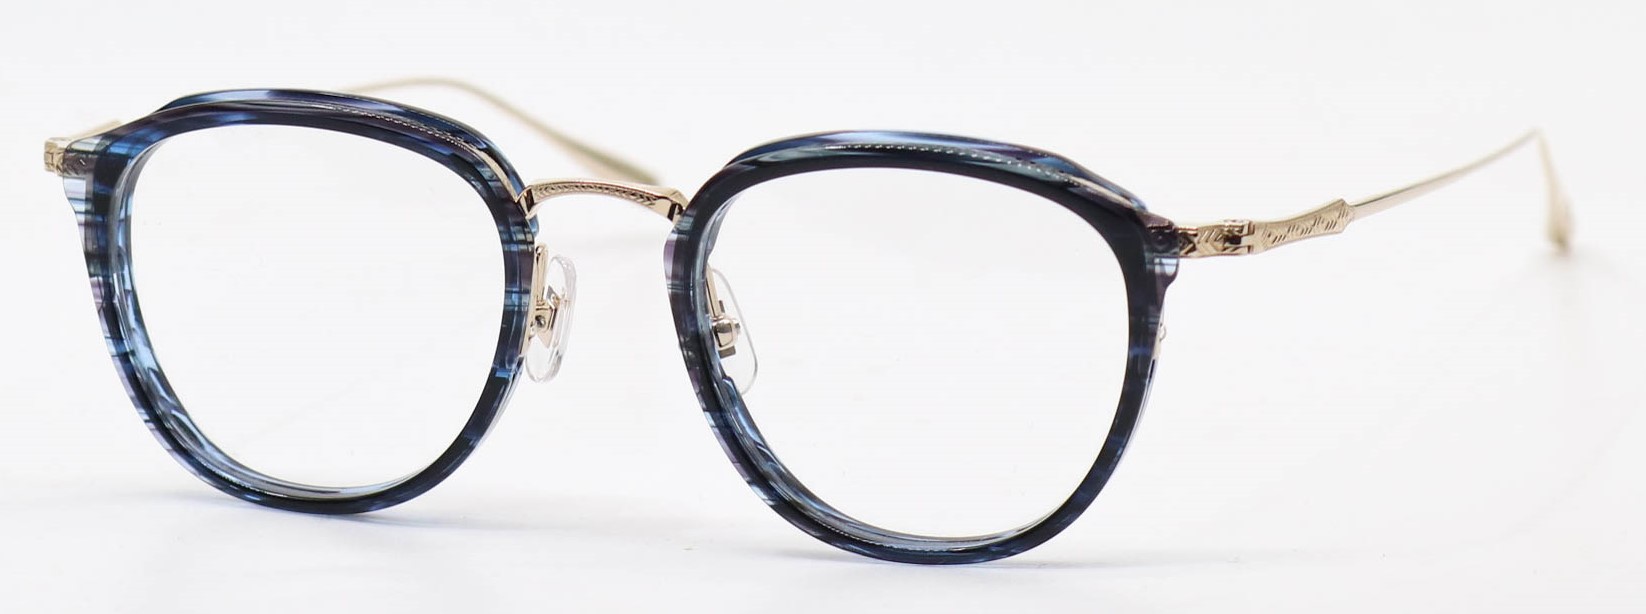 眼鏡のカラータイプC-3 Blue-Sasa/Gold